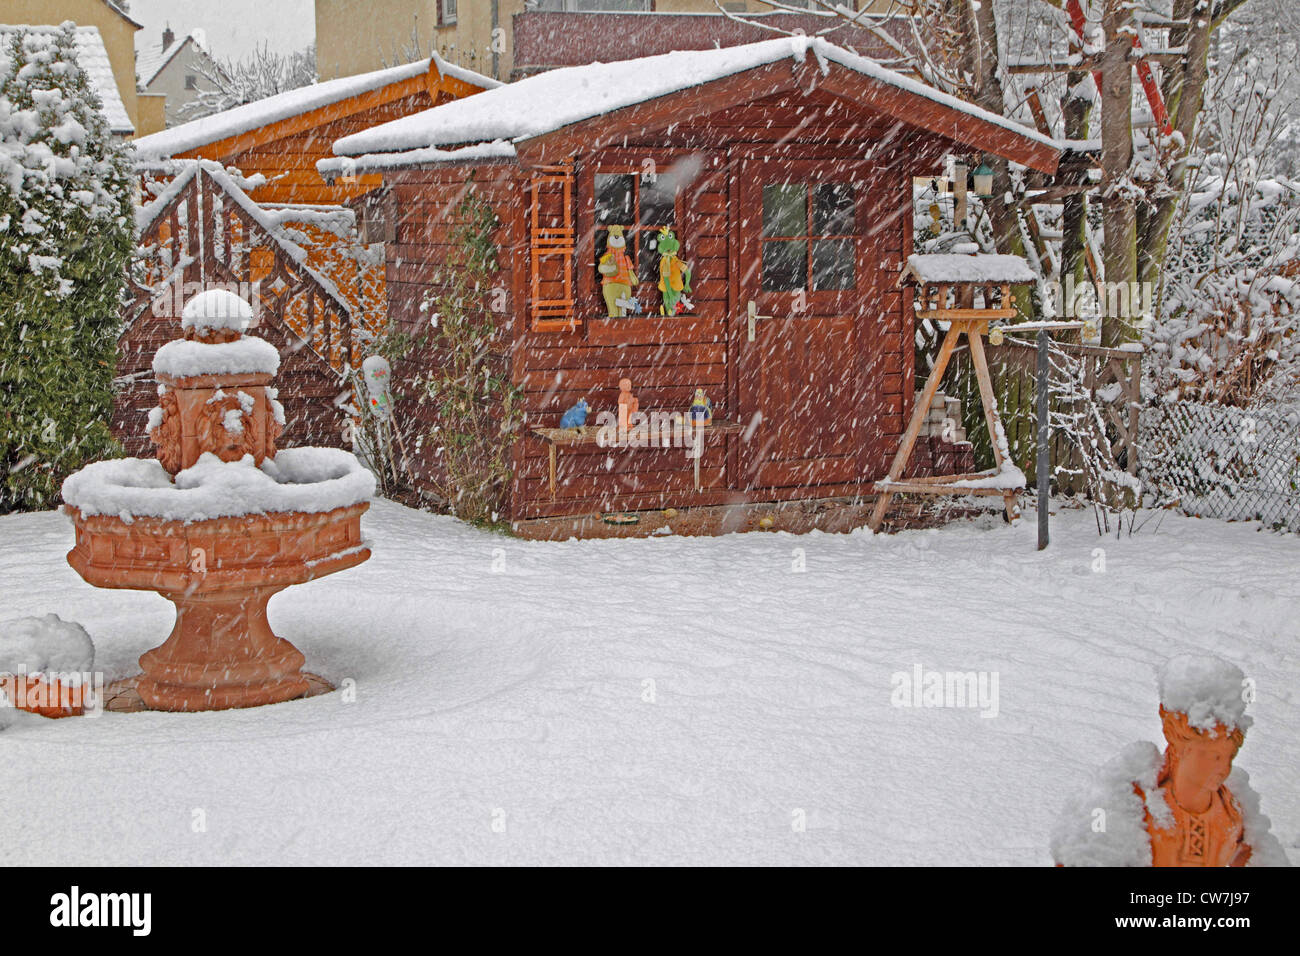 Le jardin couvert de neige avec maison d'été dans la neige, Allemagne Banque D'Images